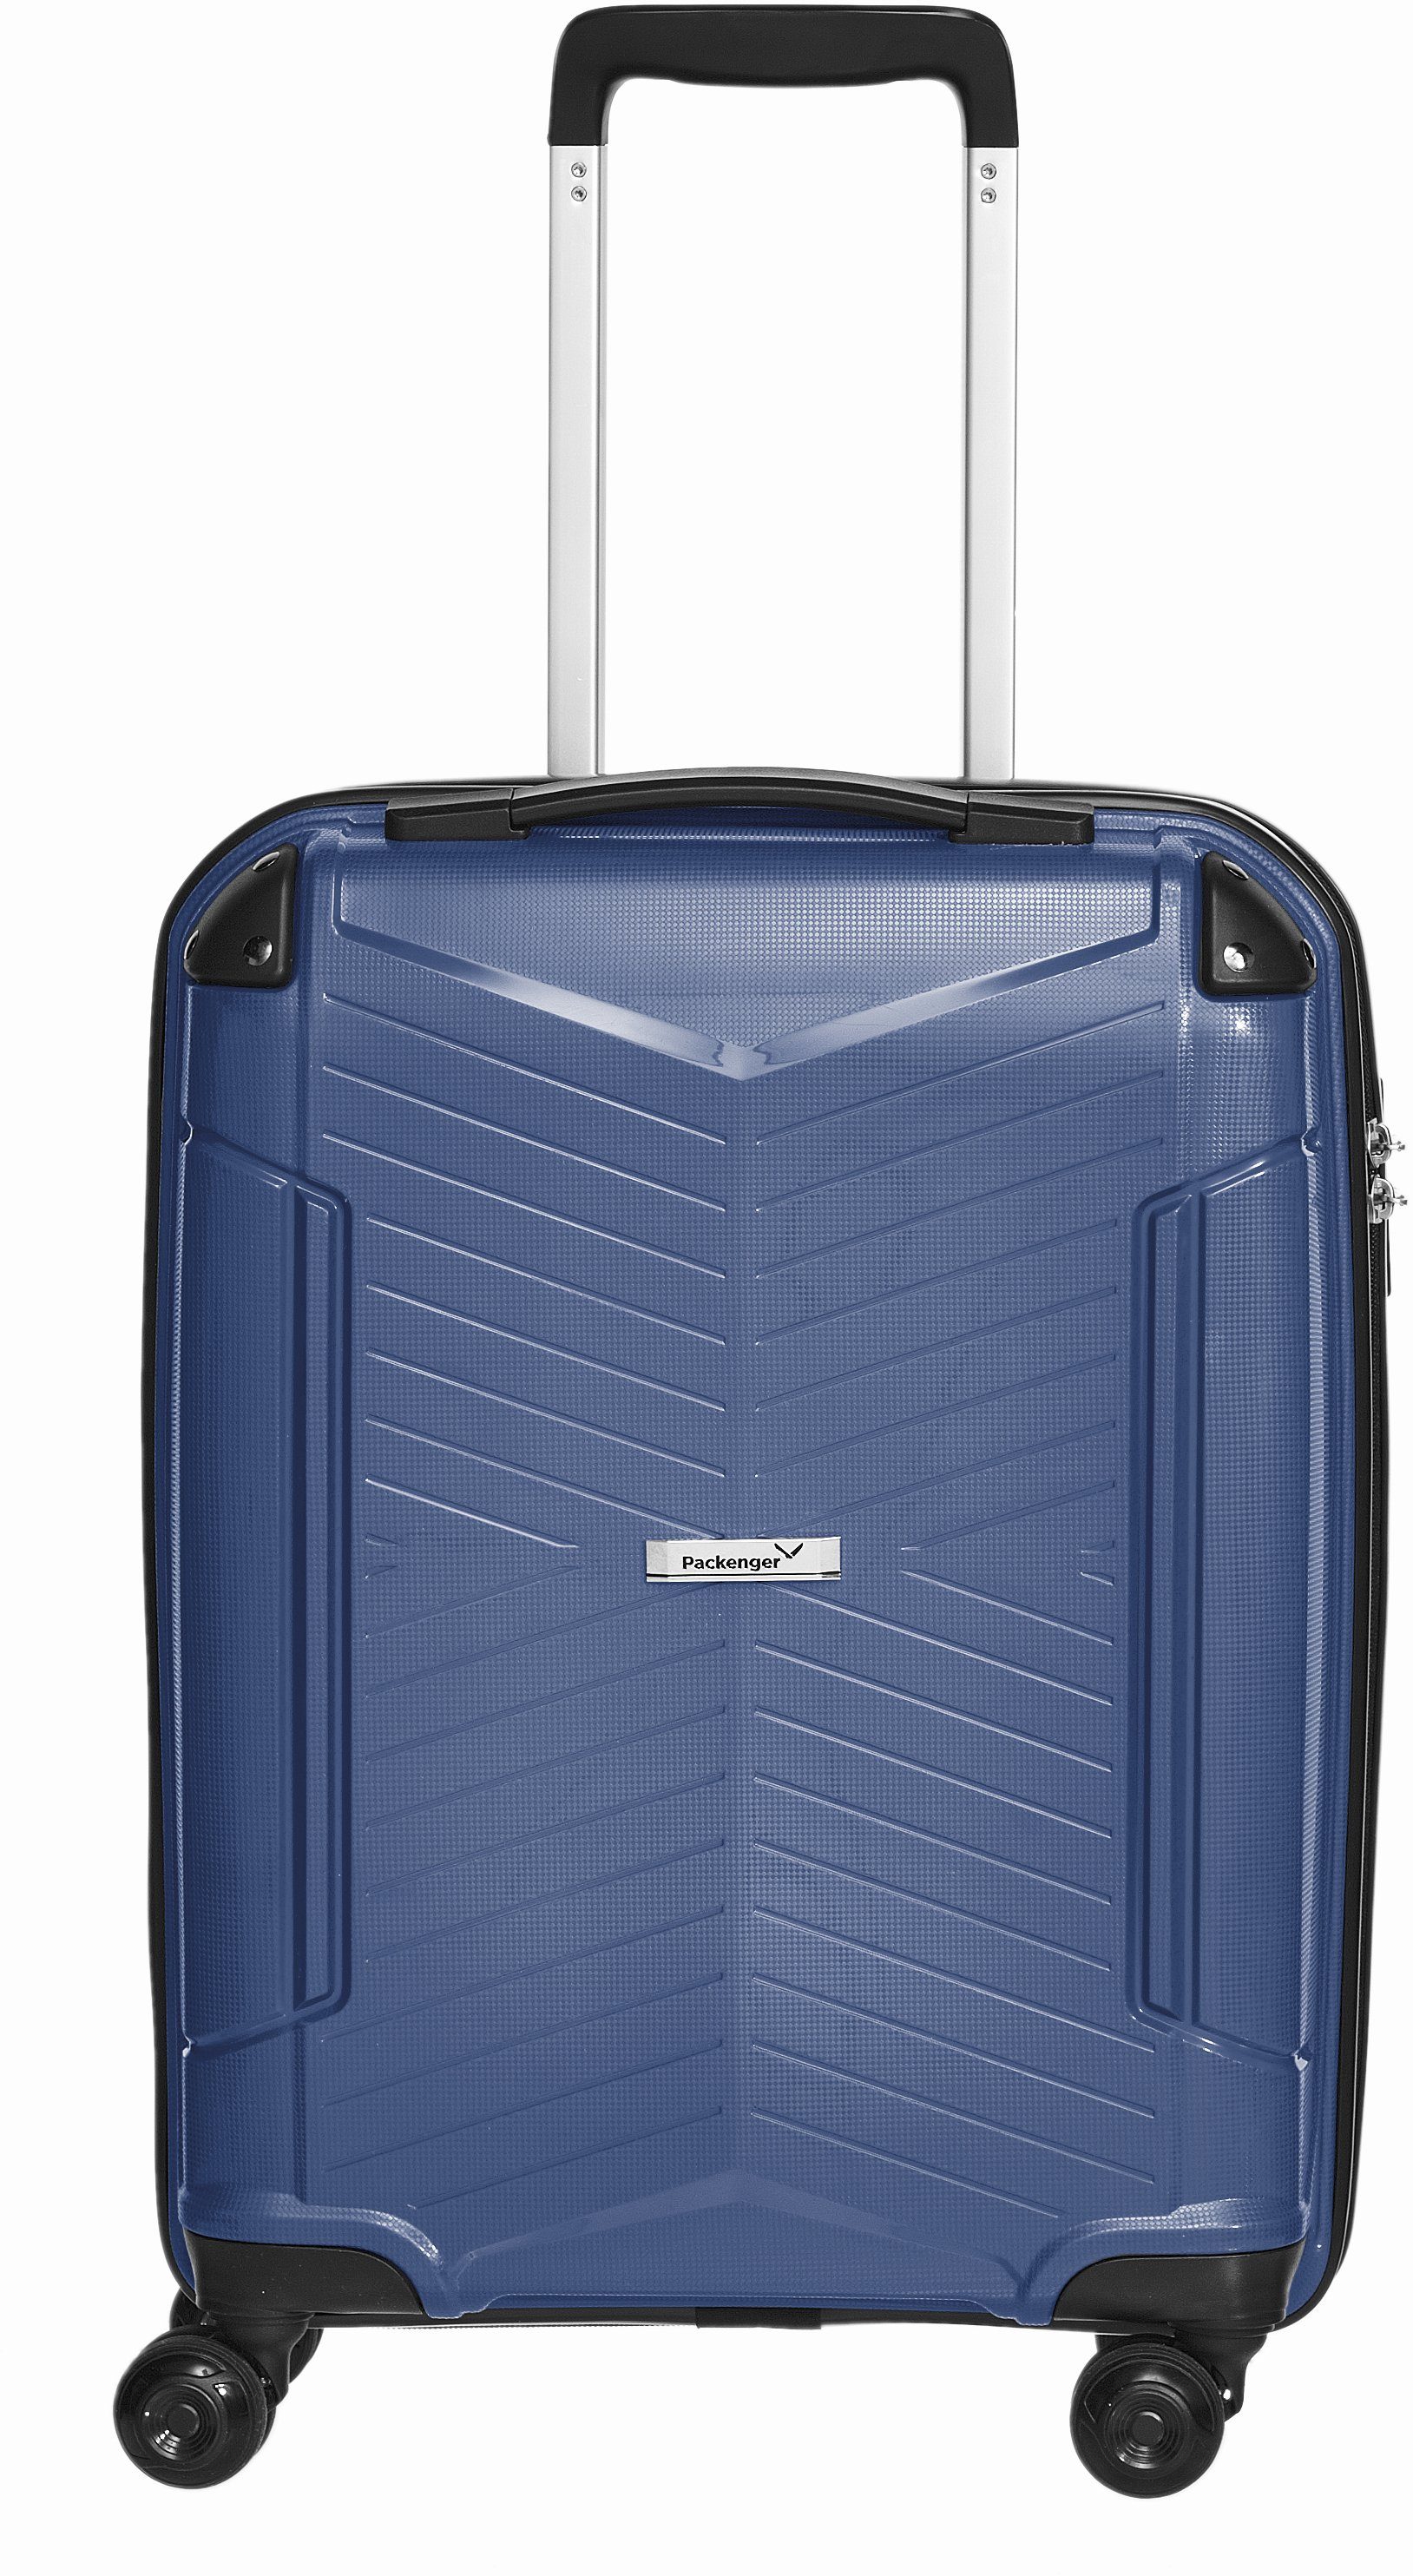 Handgepäck Koffer online kaufen | OTTO